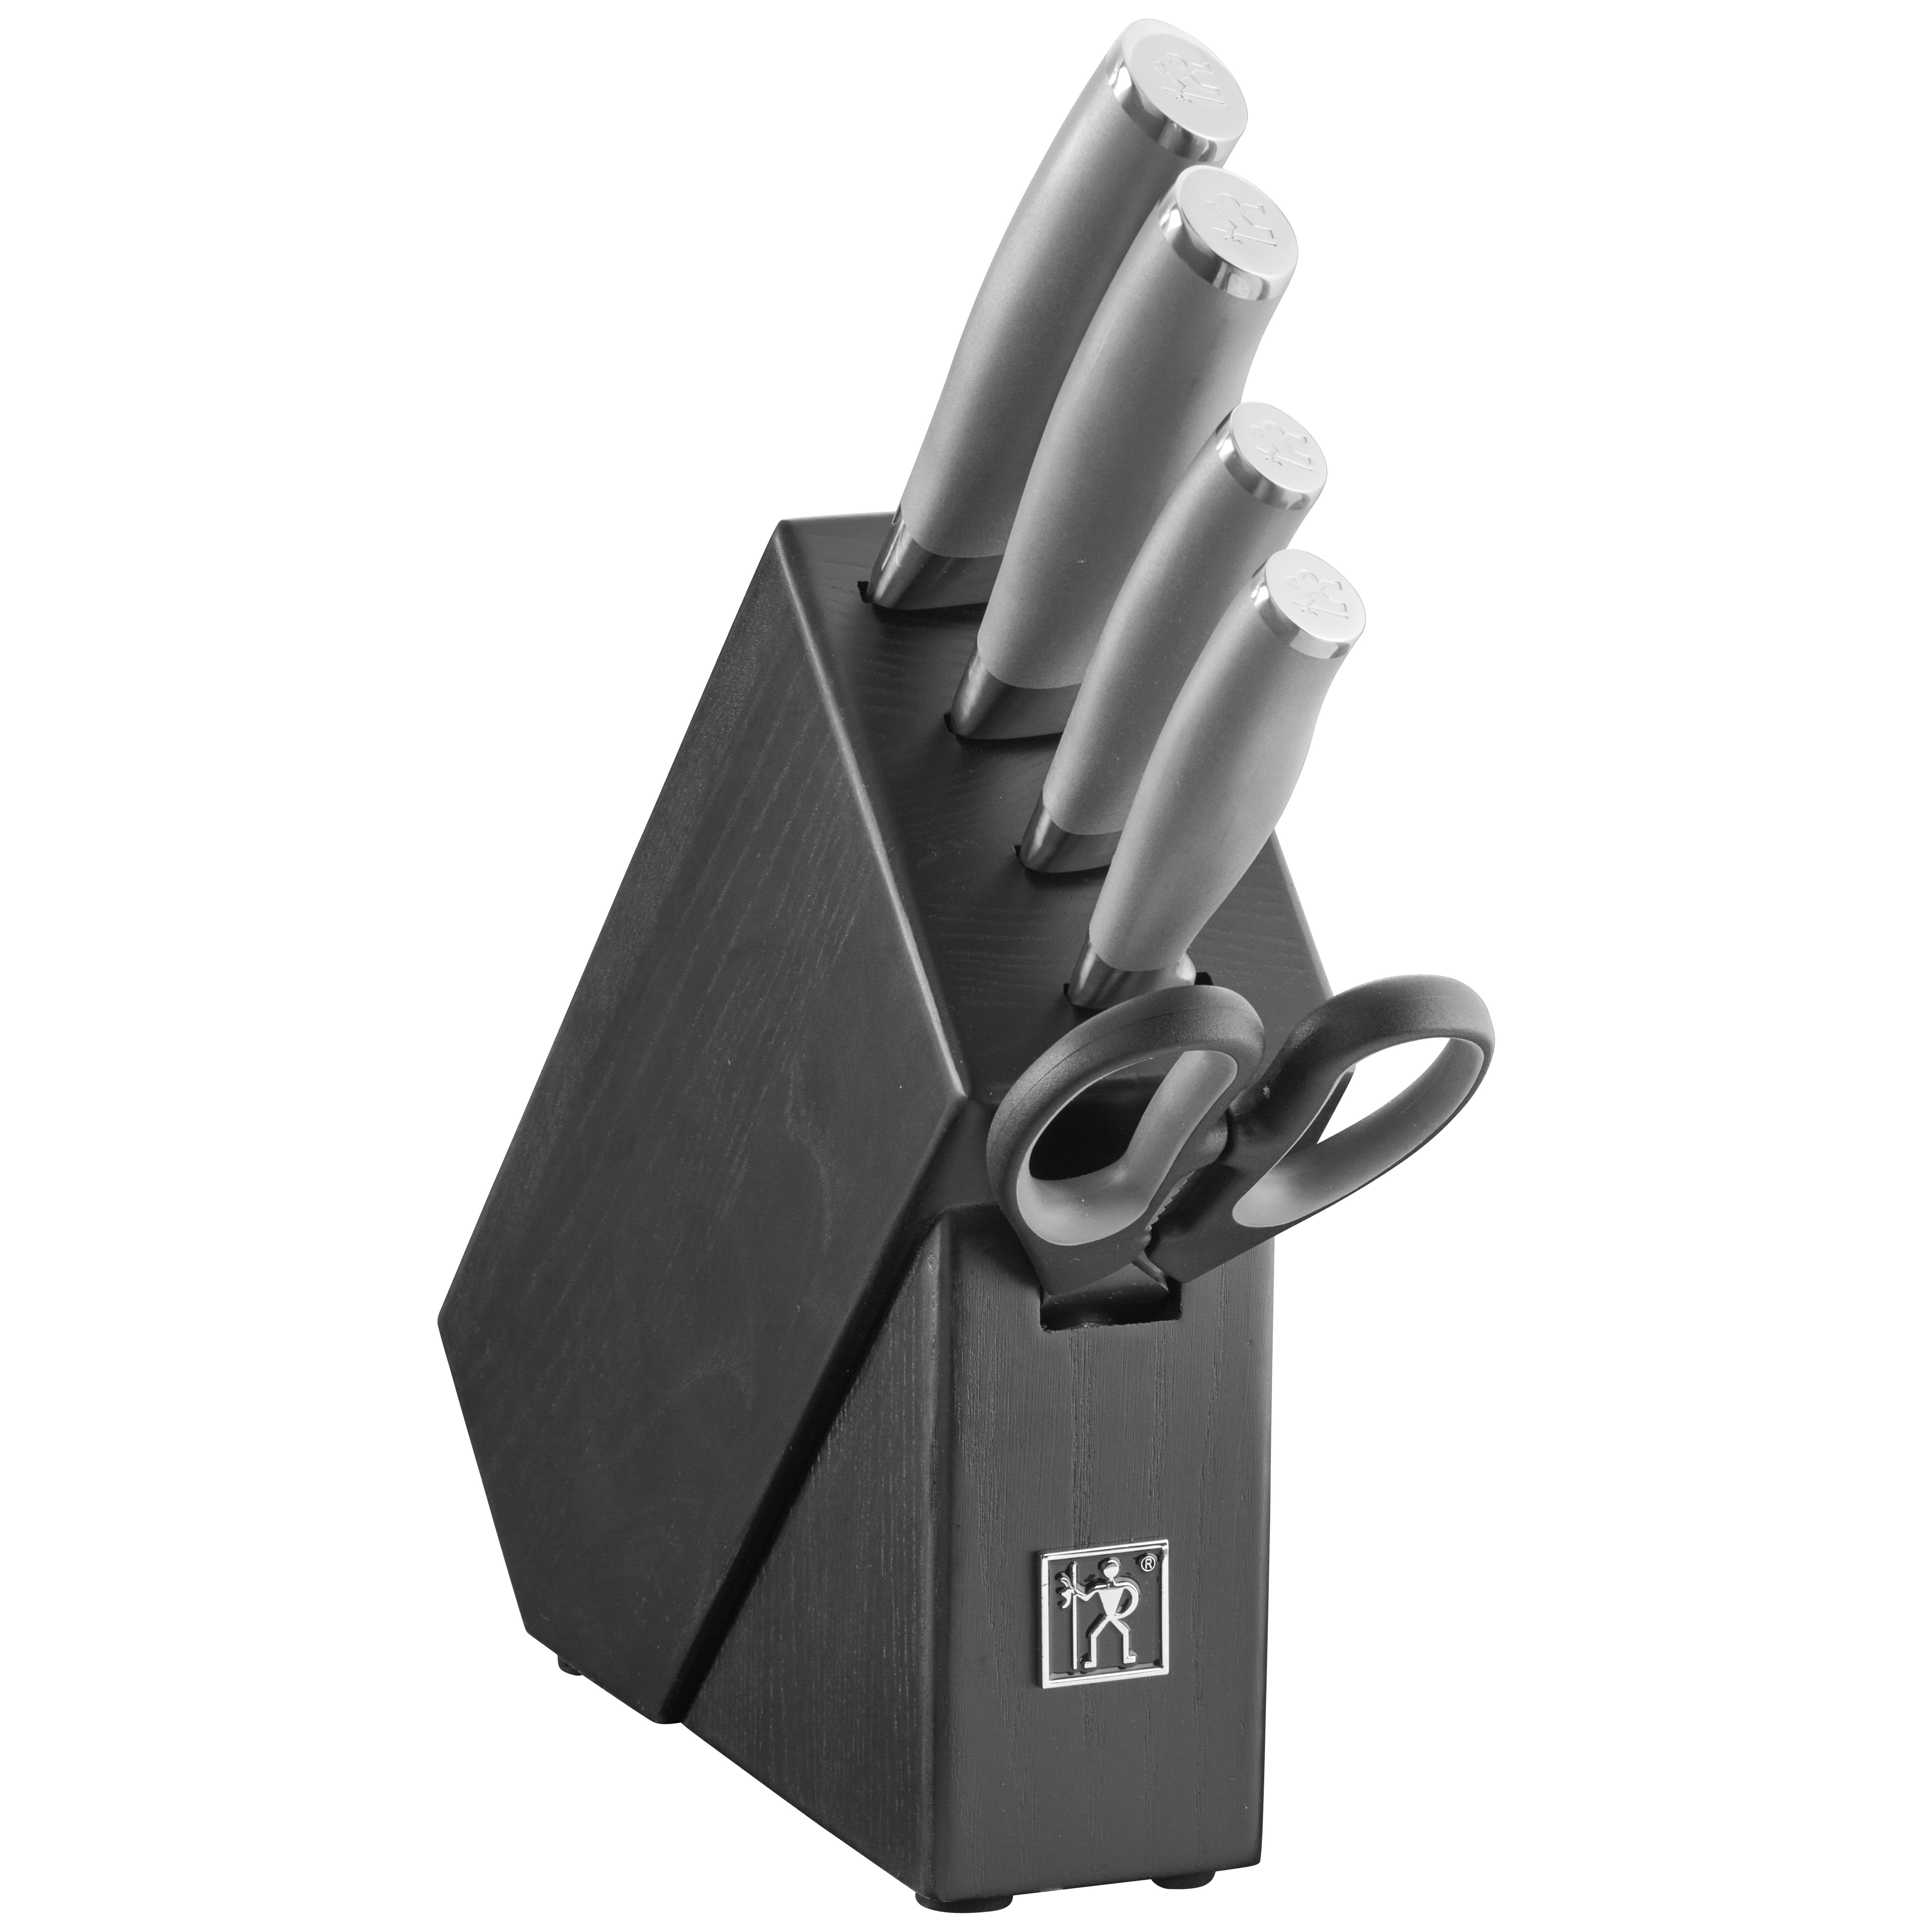 $169.95 - HENCKELS Modernist Knife Set with Block, 13 PC - Black